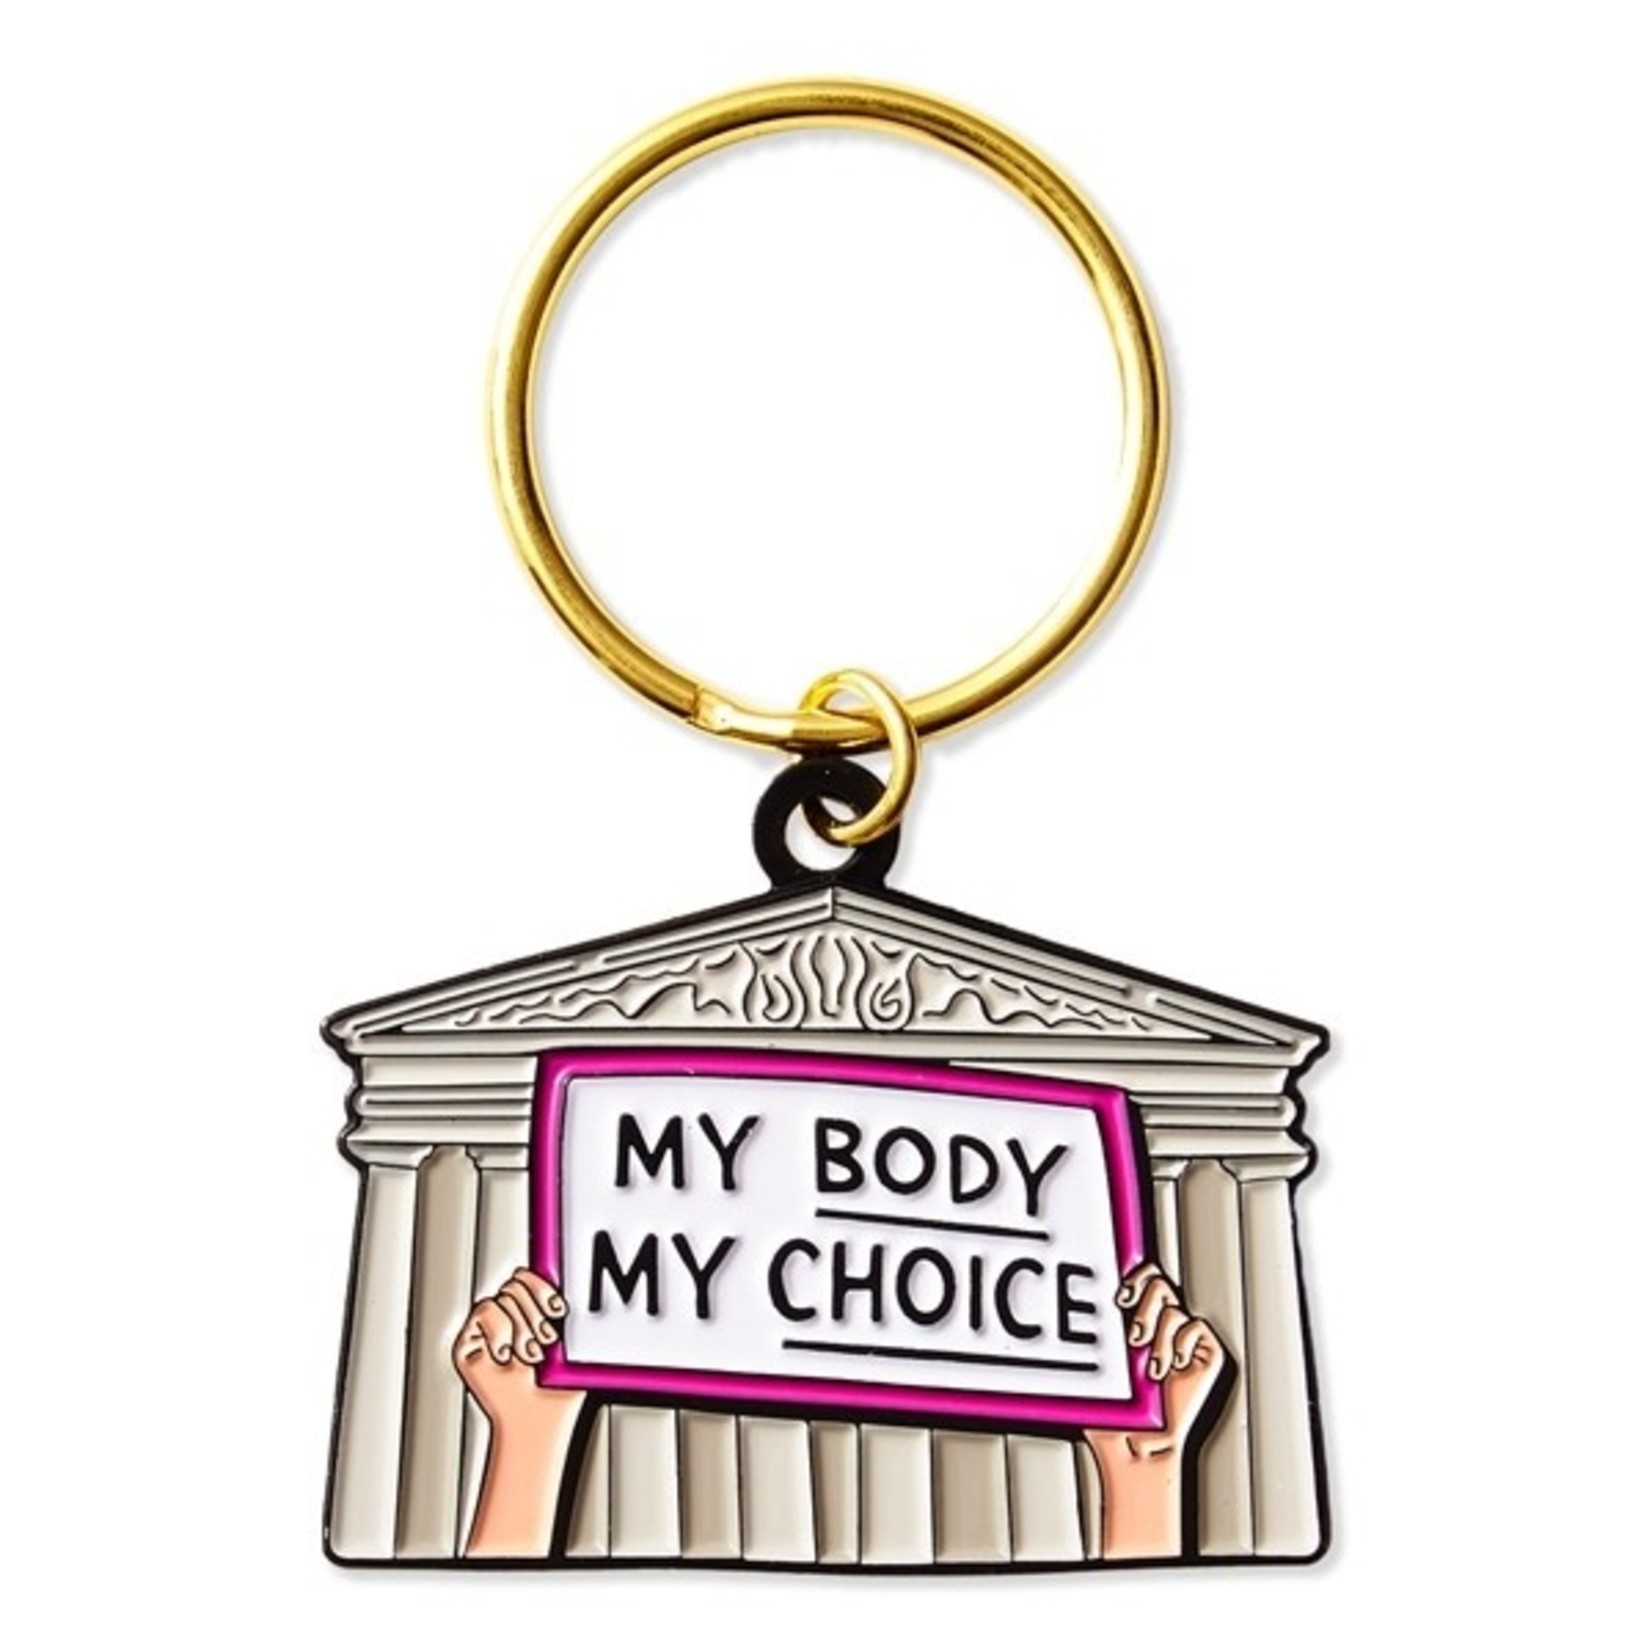 The Found My Body, My Choice Keychain